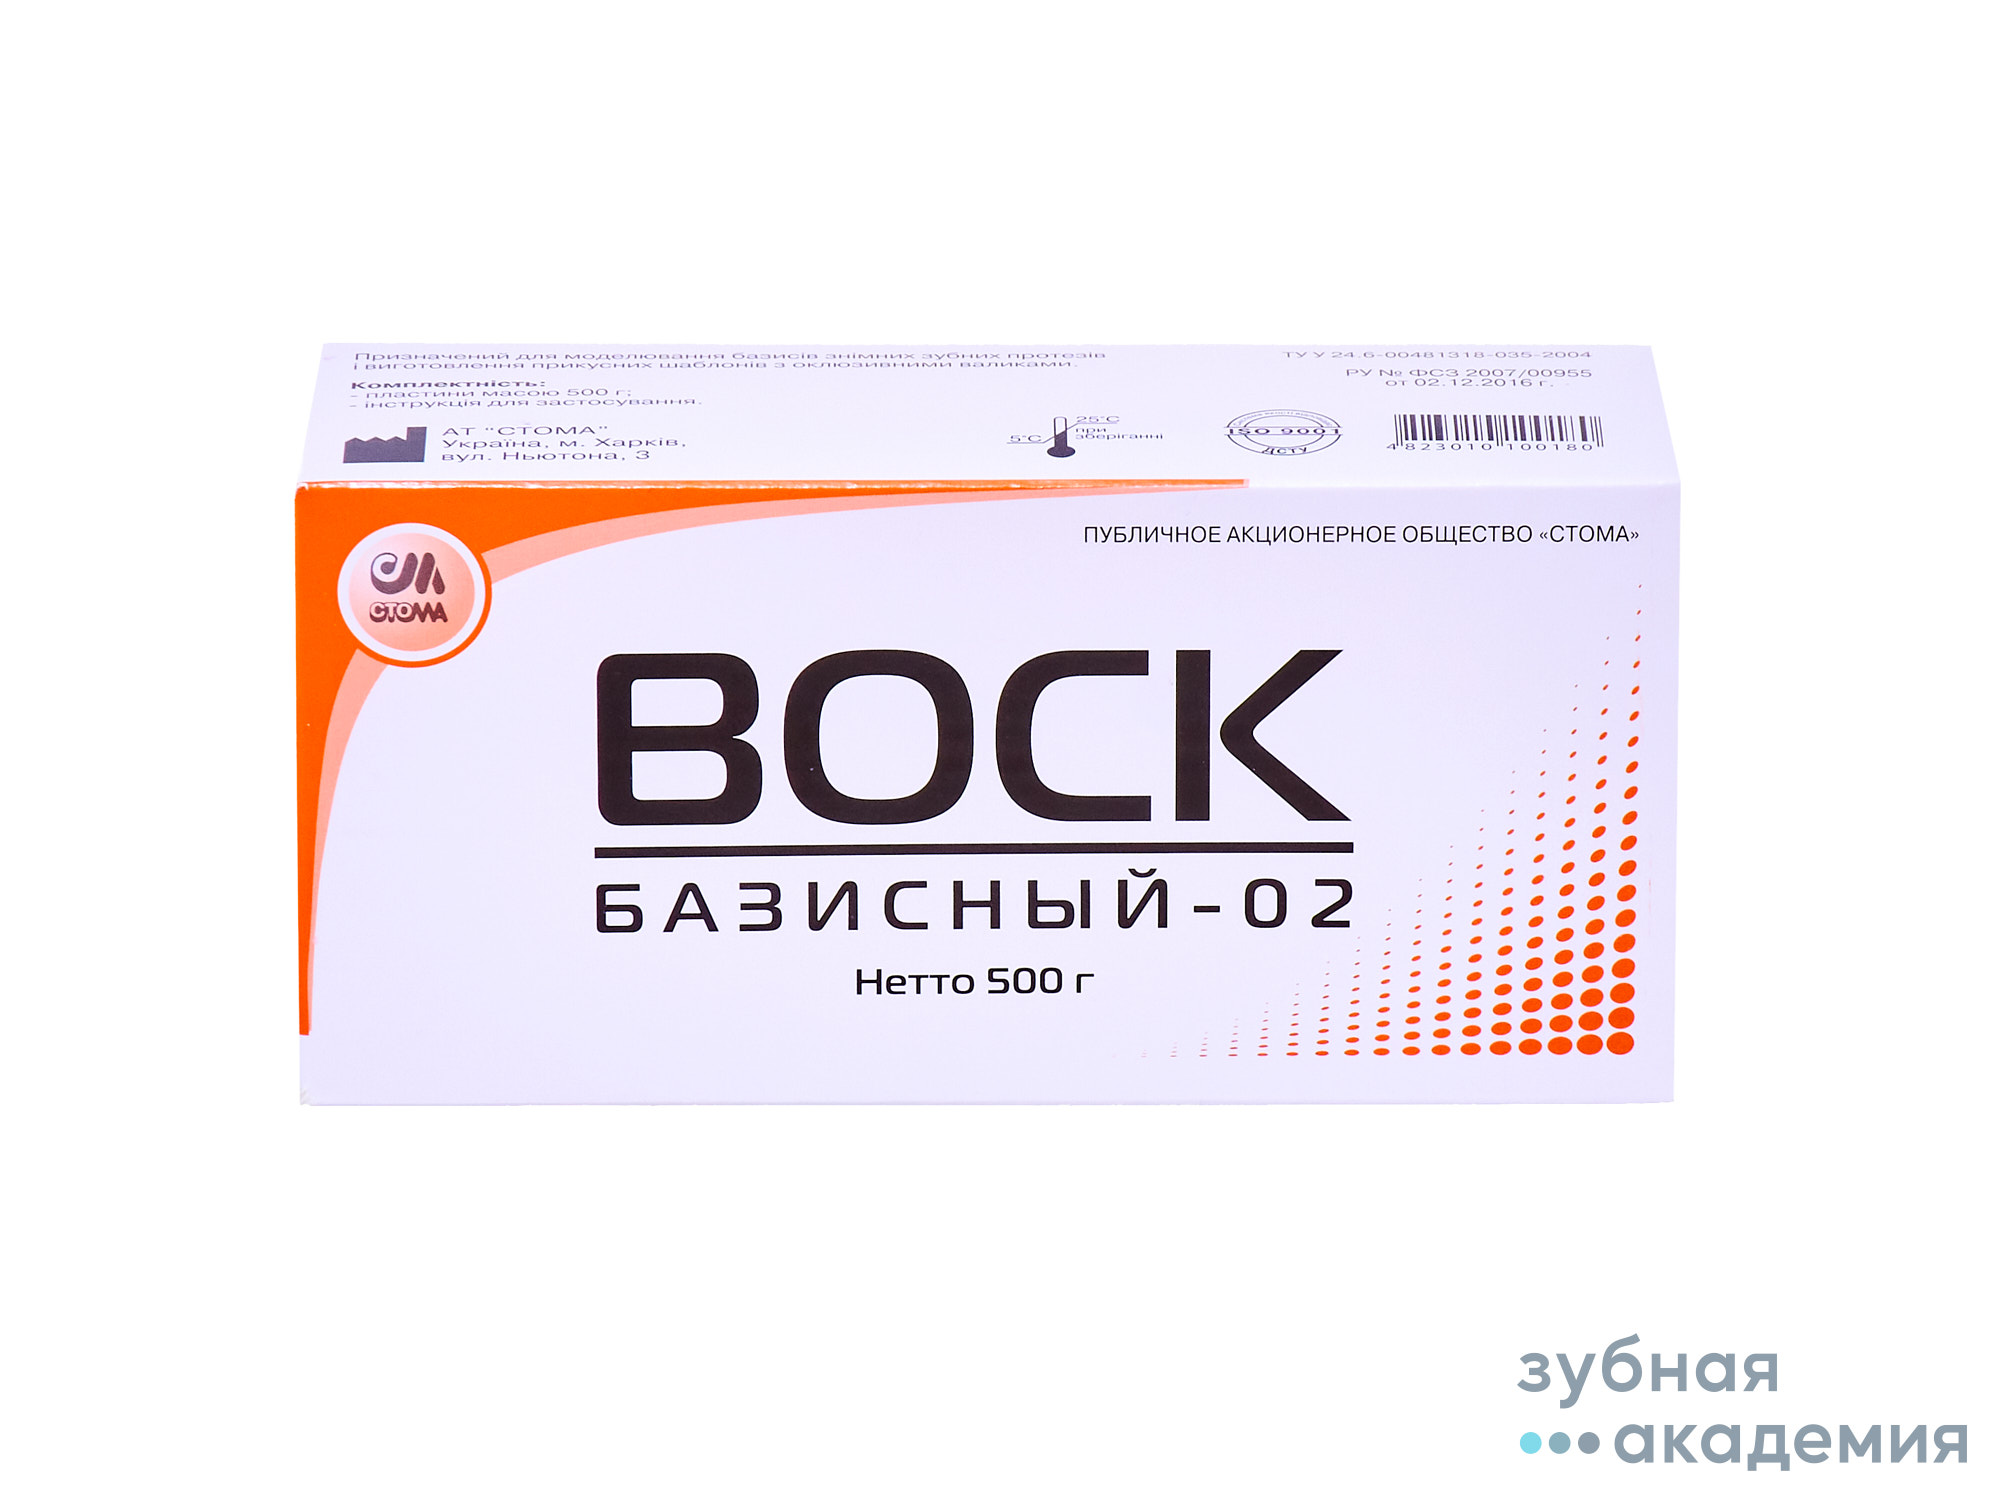 Воск Базисный-02 упаковка 500гр/Стома/Украина